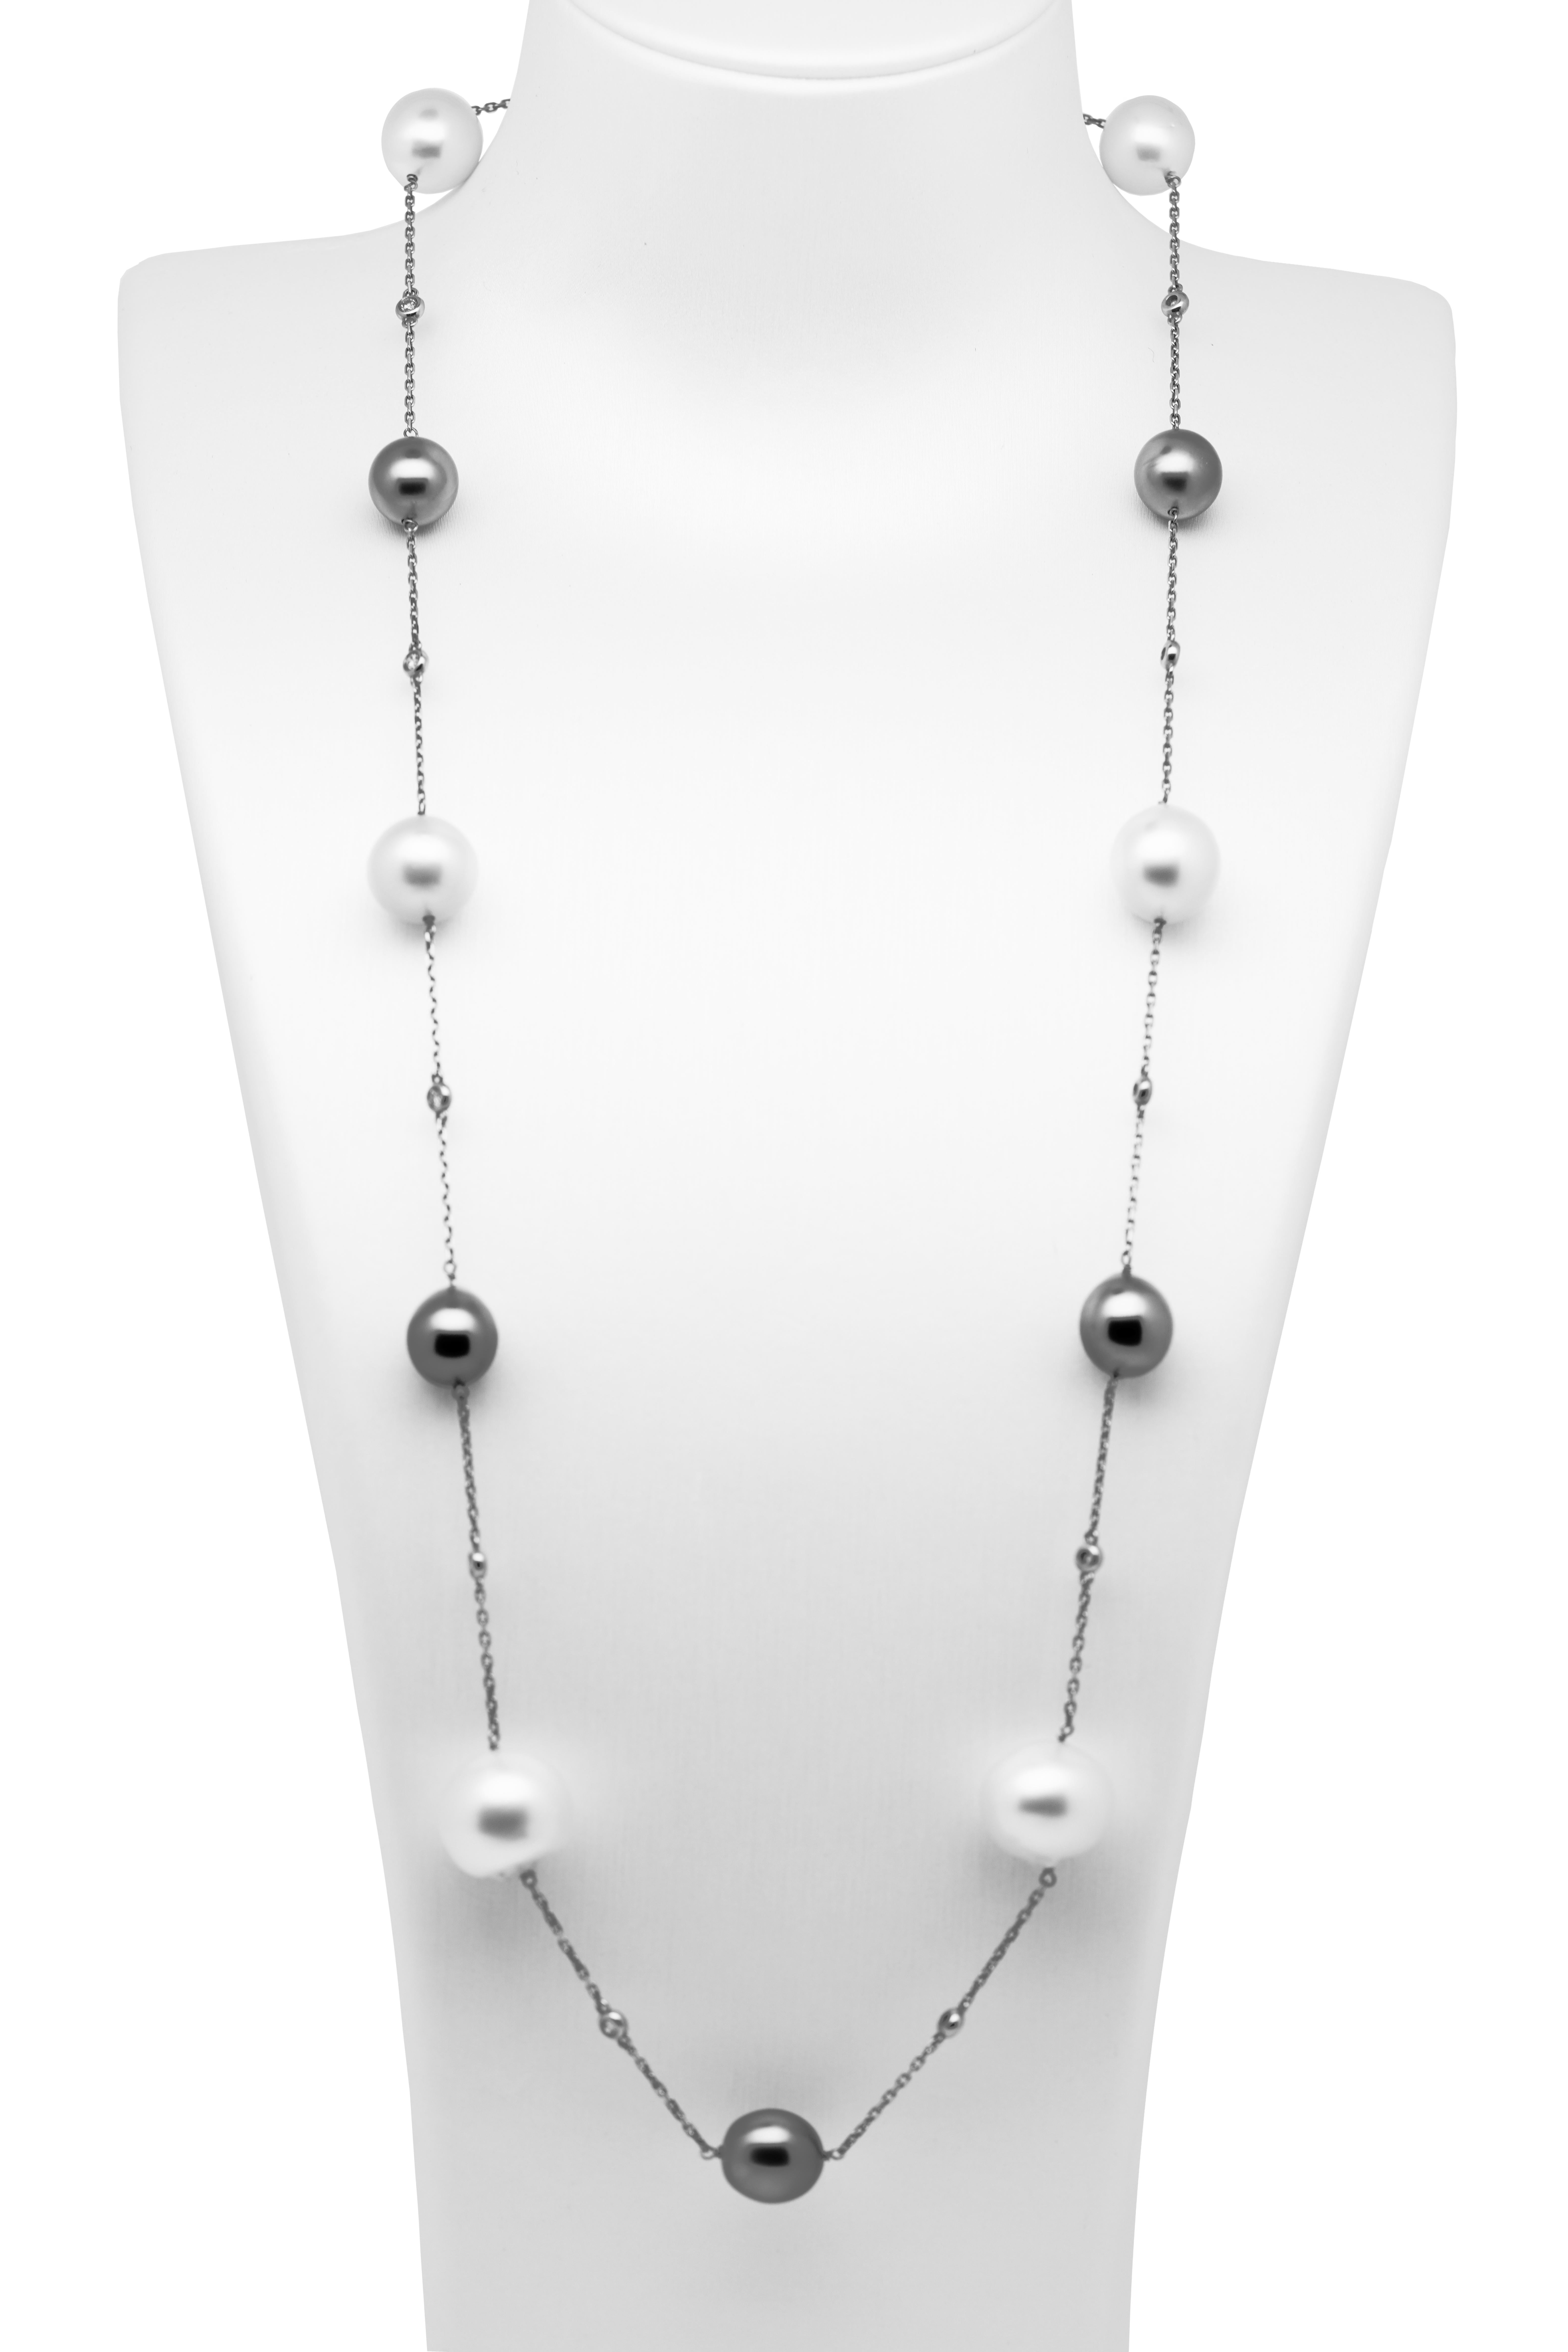 Dieses klassische und elegante Perlen- und Diamantencollier besteht aus weißen Südsee-Zuchtperlen (mit einer Größe von 12 - 14,5 mm), Tahiti-Perlen (mit einer Größe von ca. 10 mm) und Diamanten an einer Kette aus 18 Karat Weißgold.

Einzelheiten zum